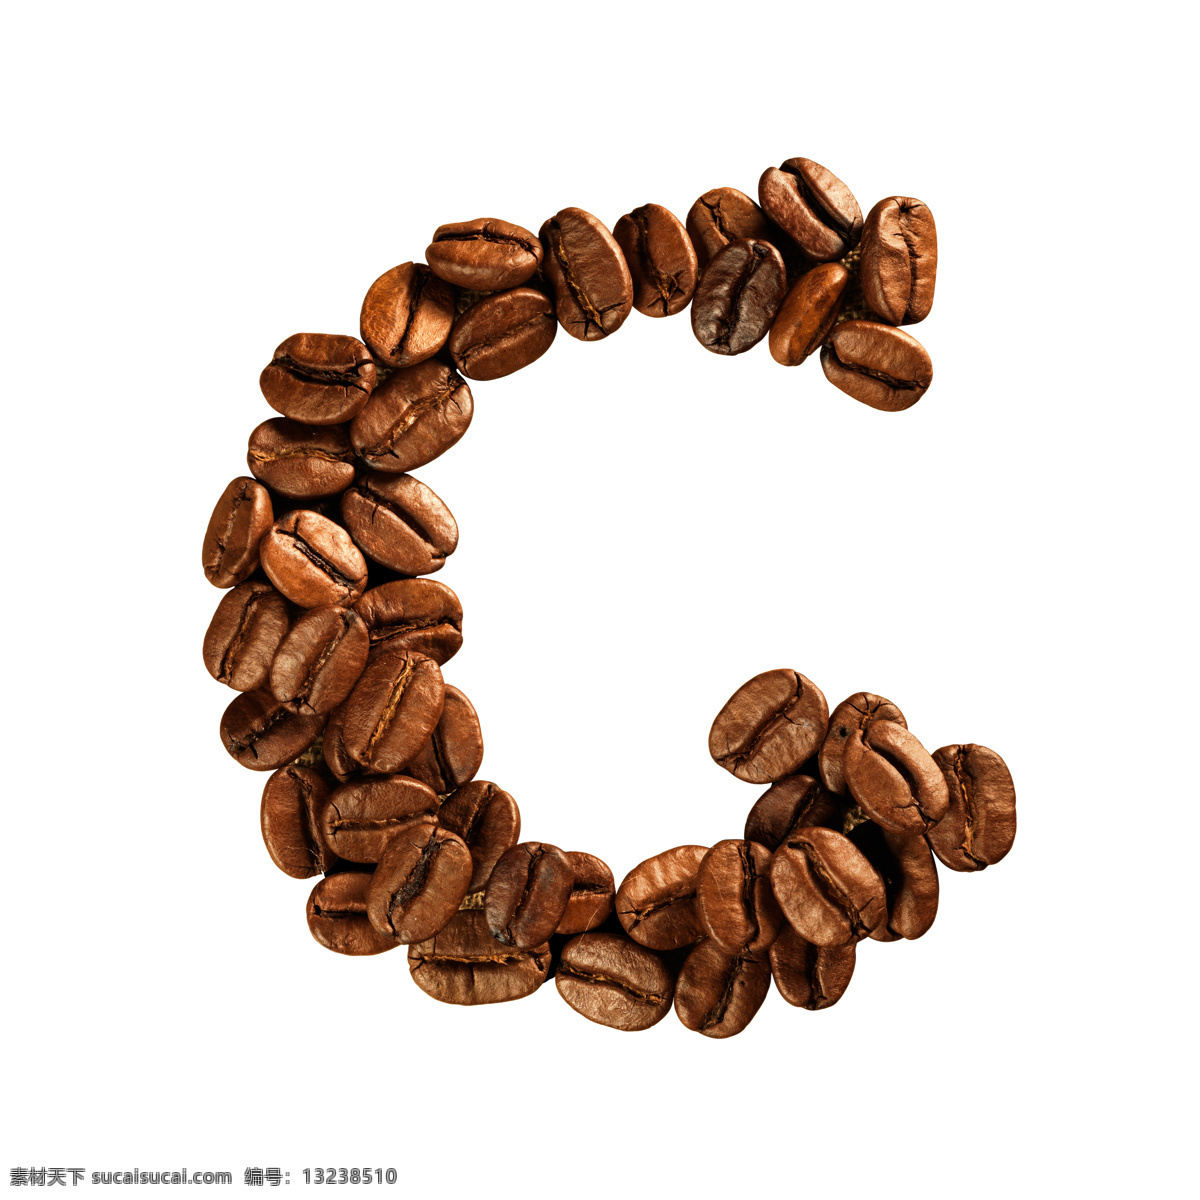 咖啡豆 组成 字母 g 咖啡 文字 艺术字体 食材原料 书画文字 文化艺术 白色